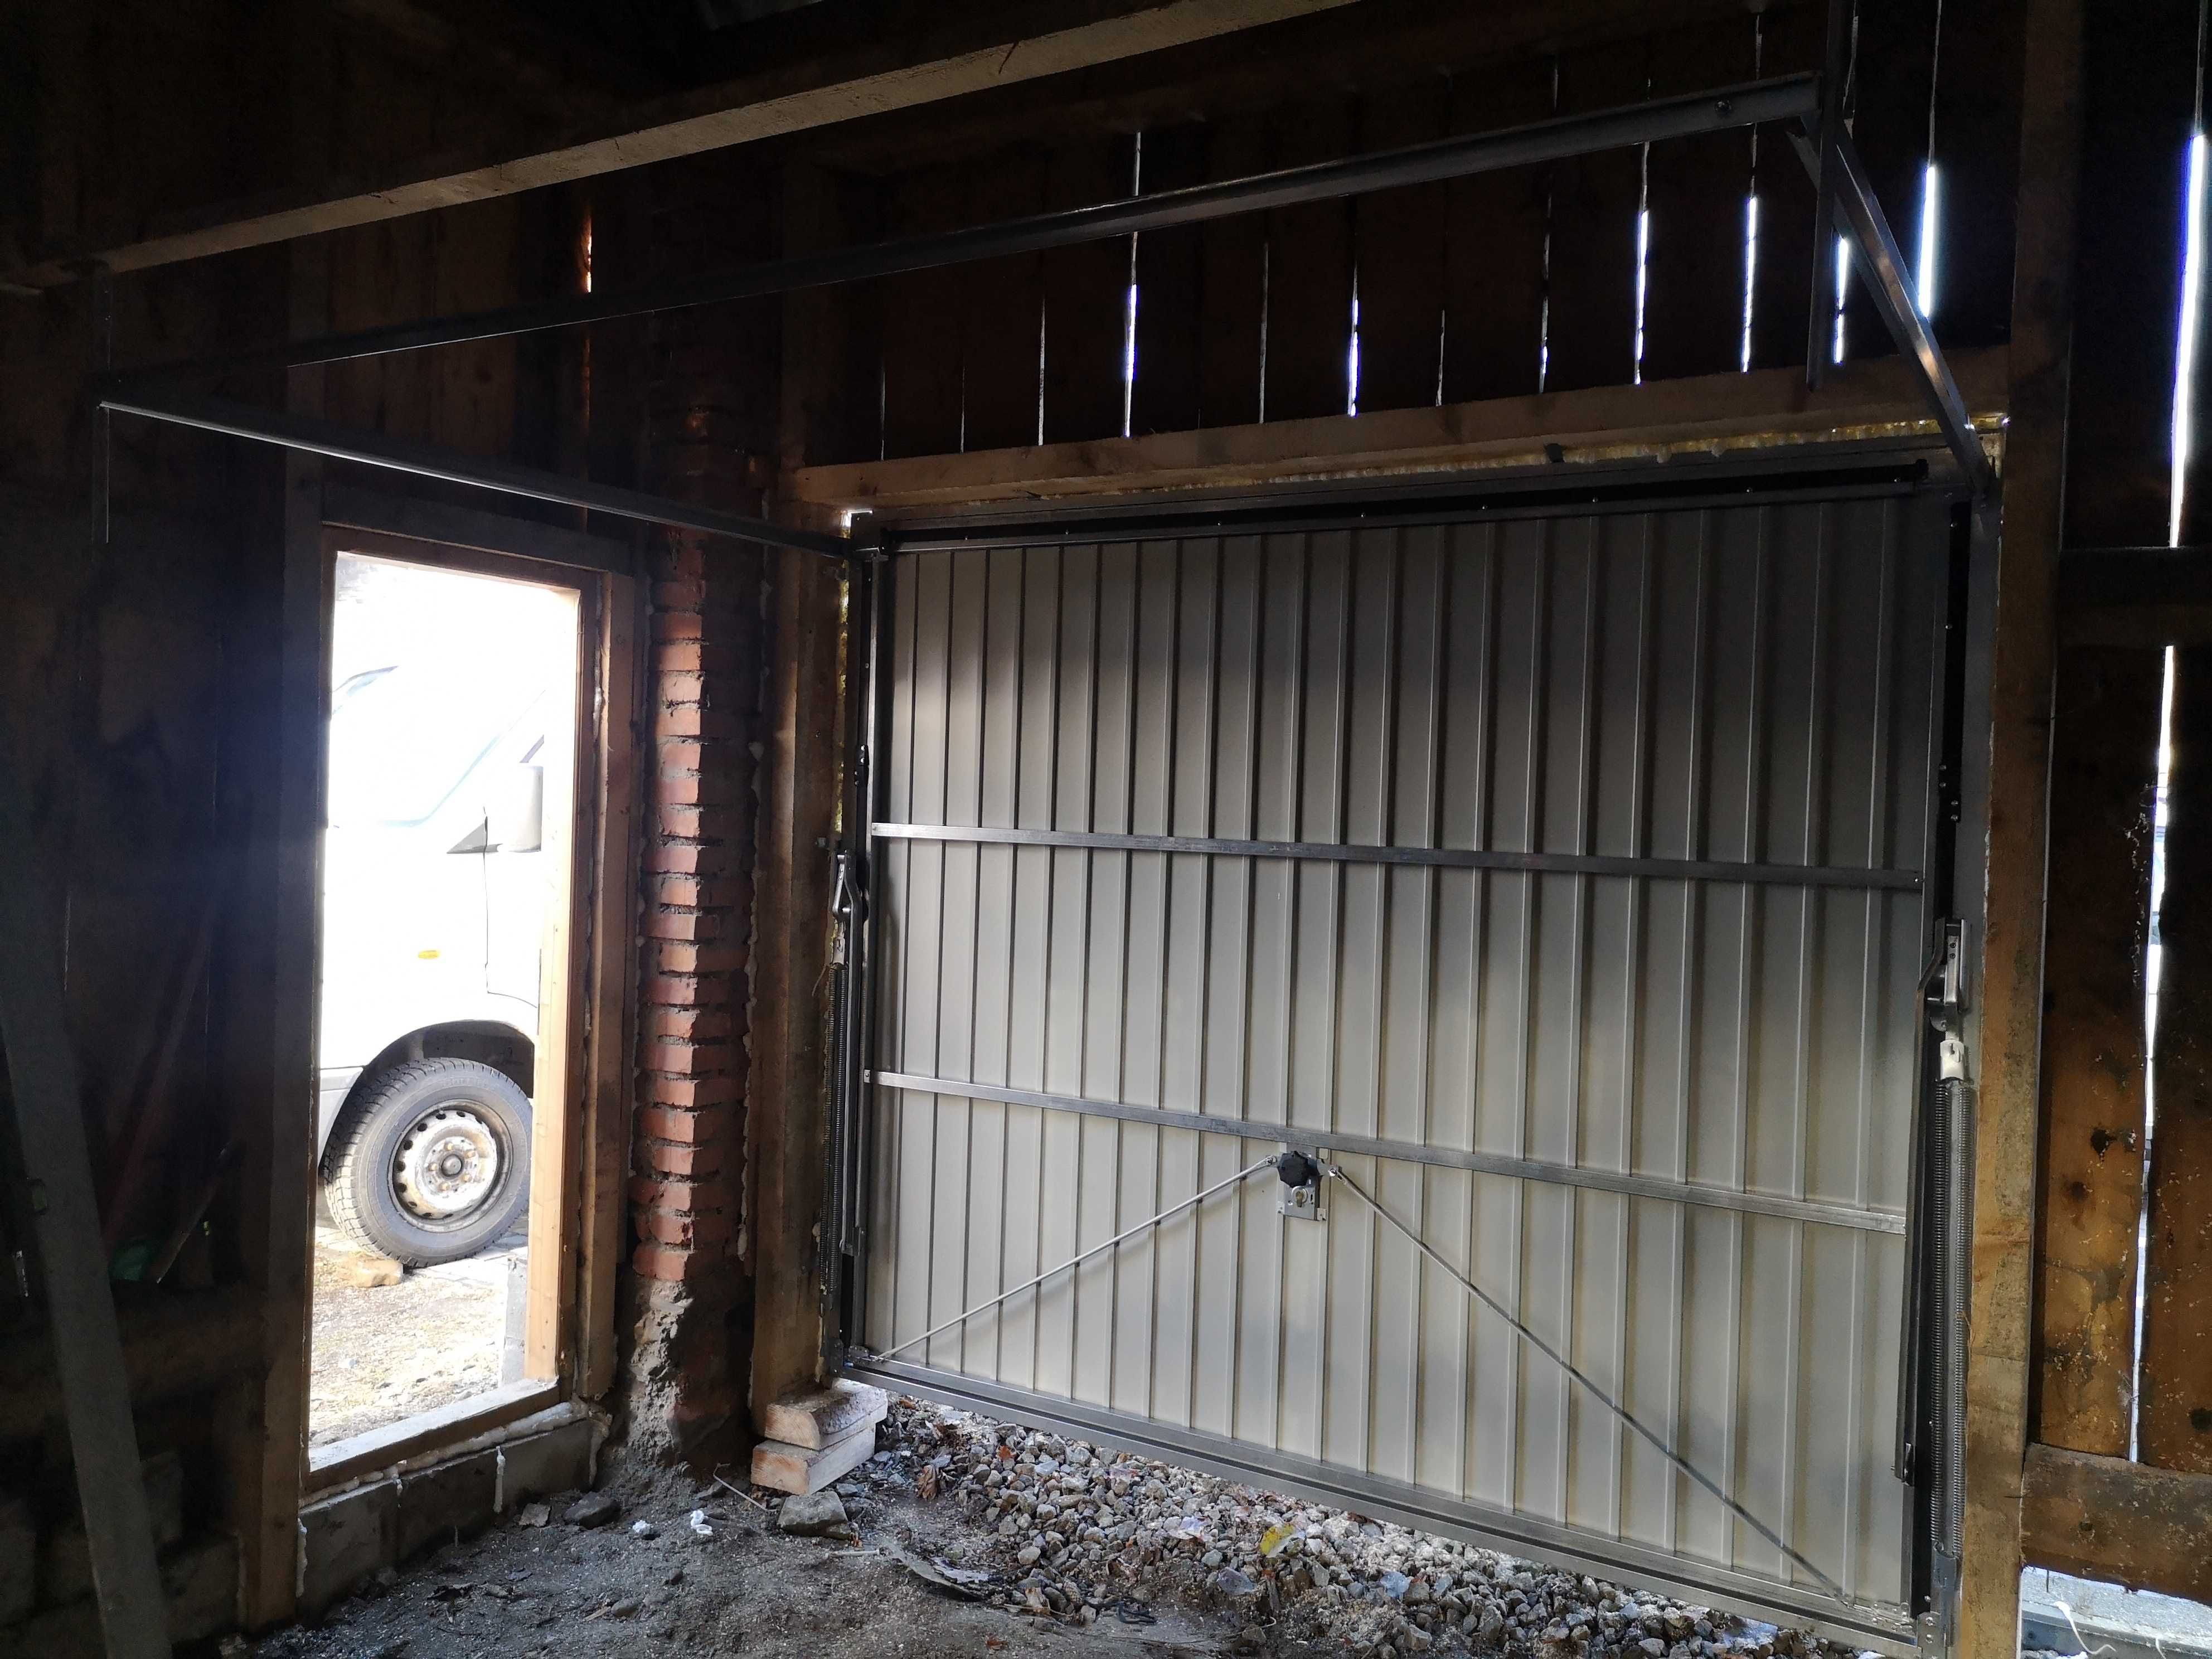 Brama garażowa uchylna uchył 3000x2100 antracyt brąz czarna grafit